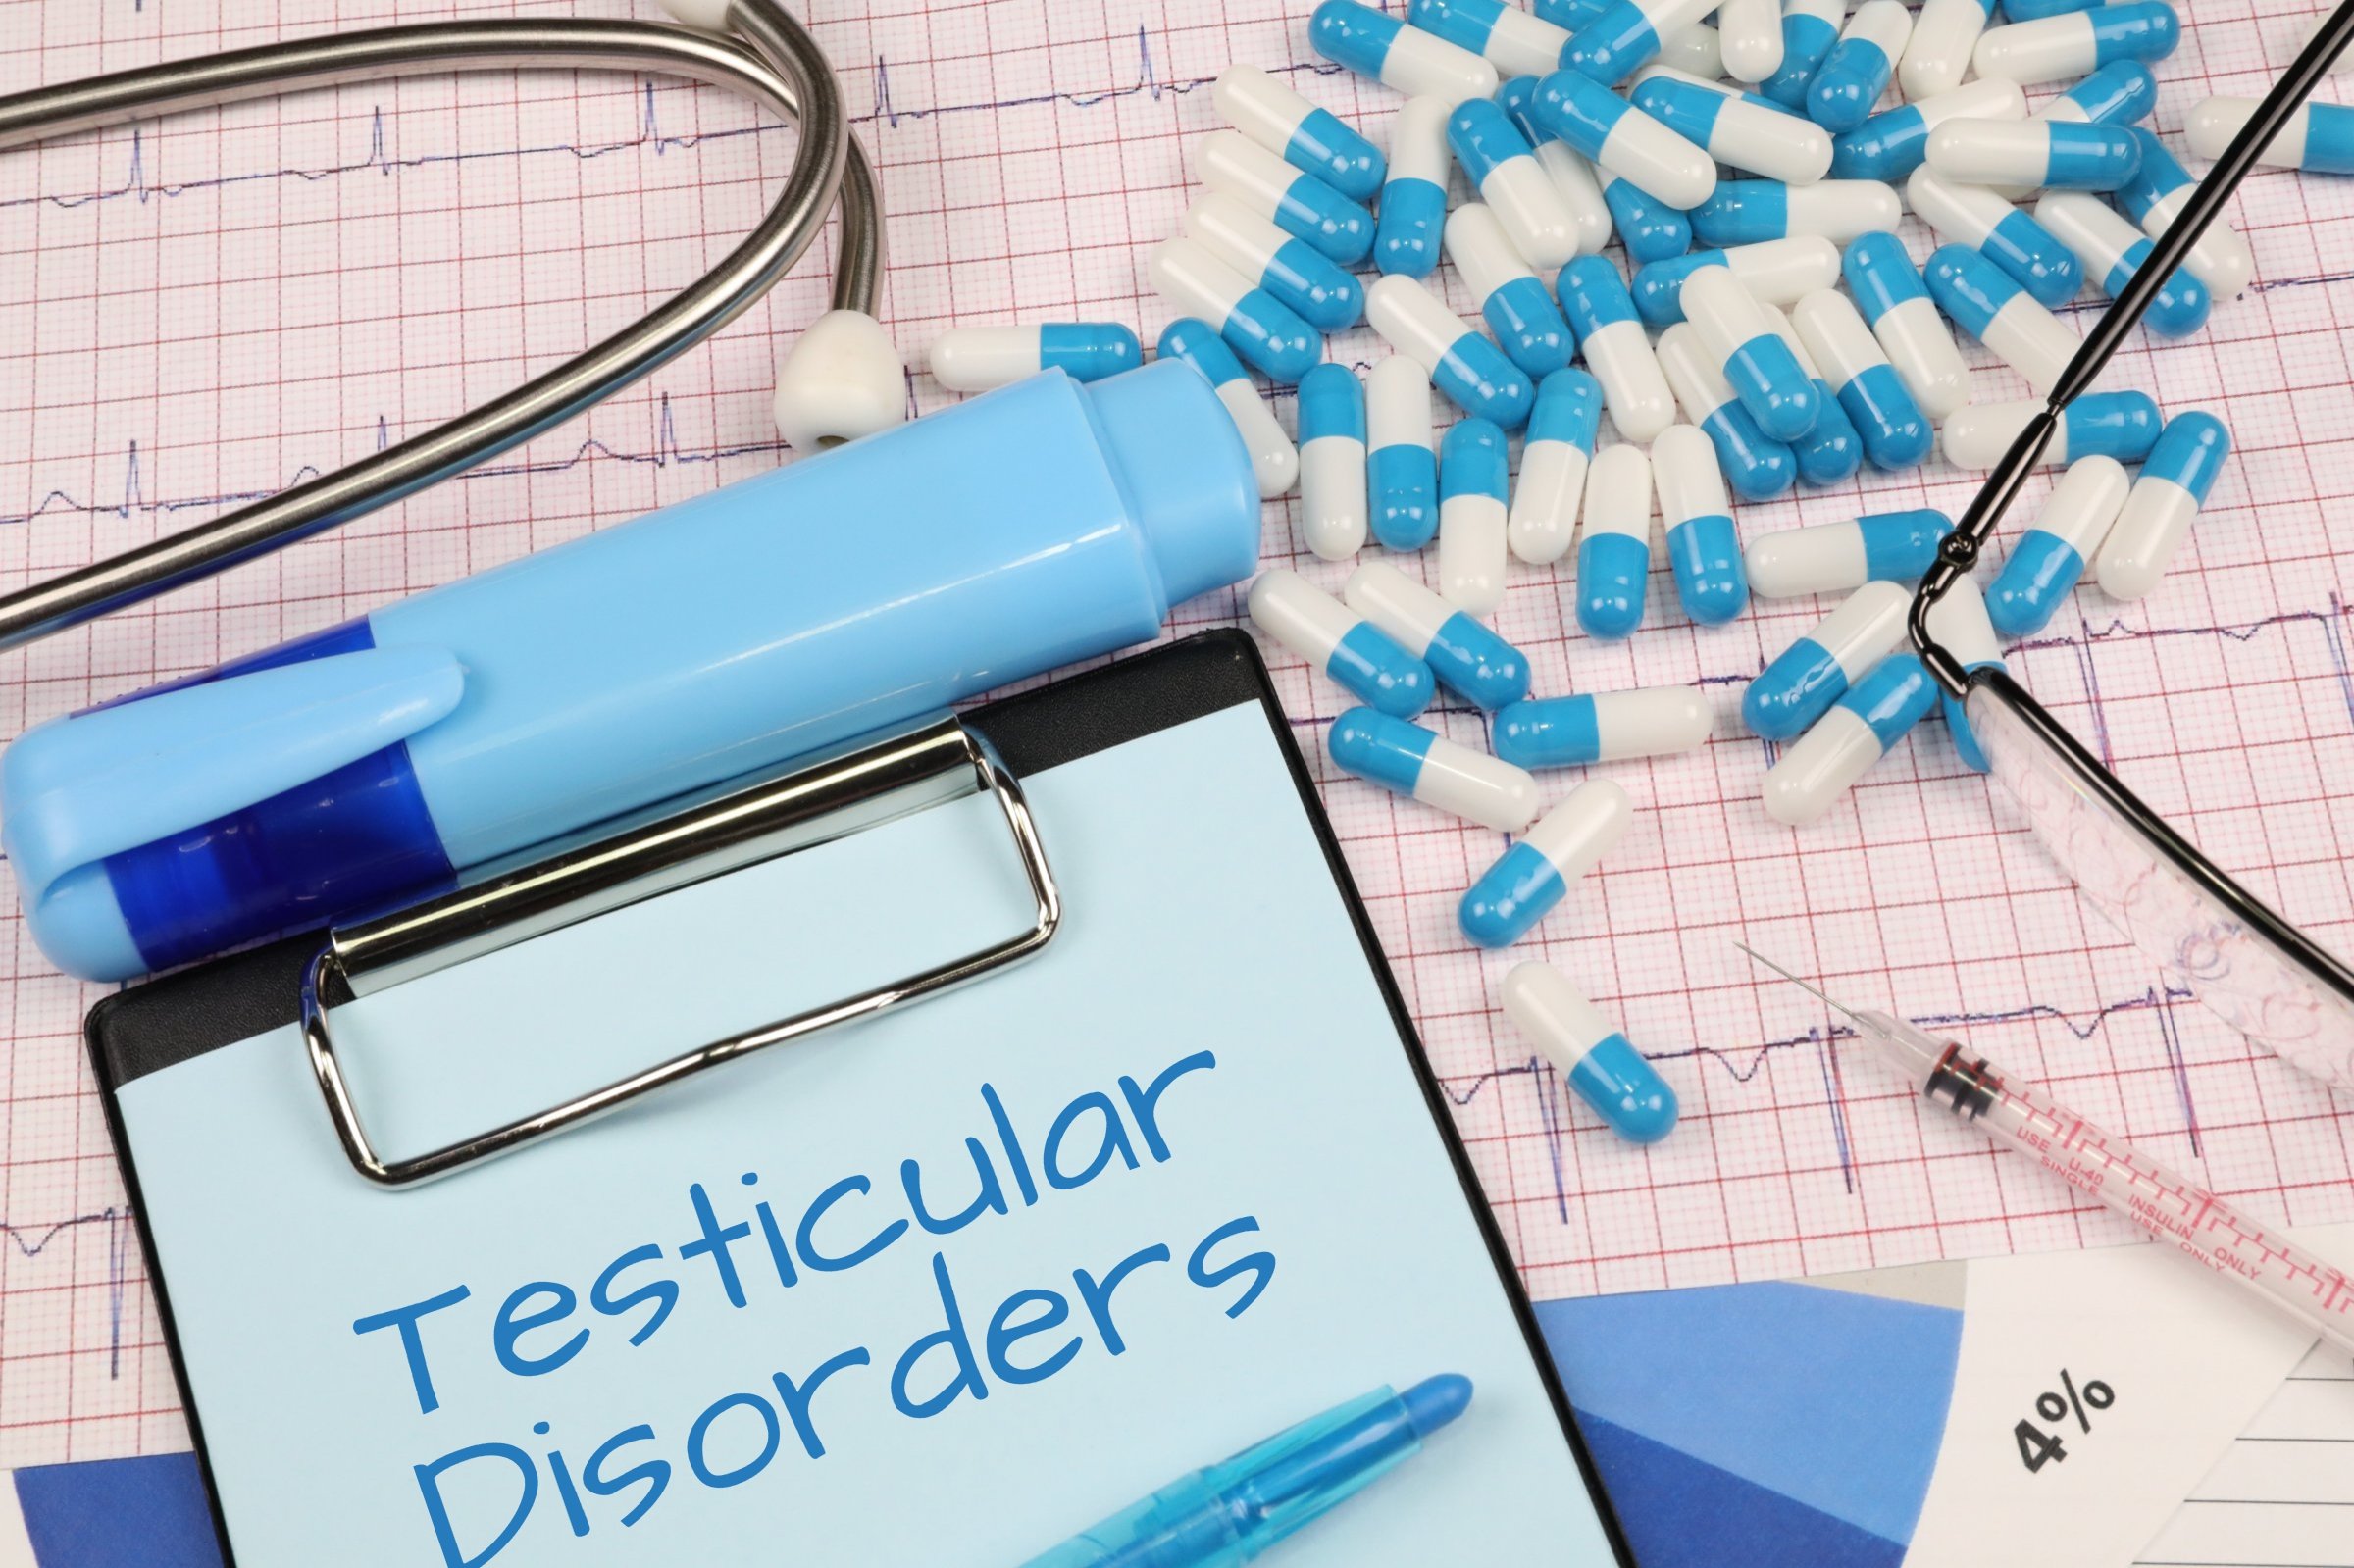 testicular disorders